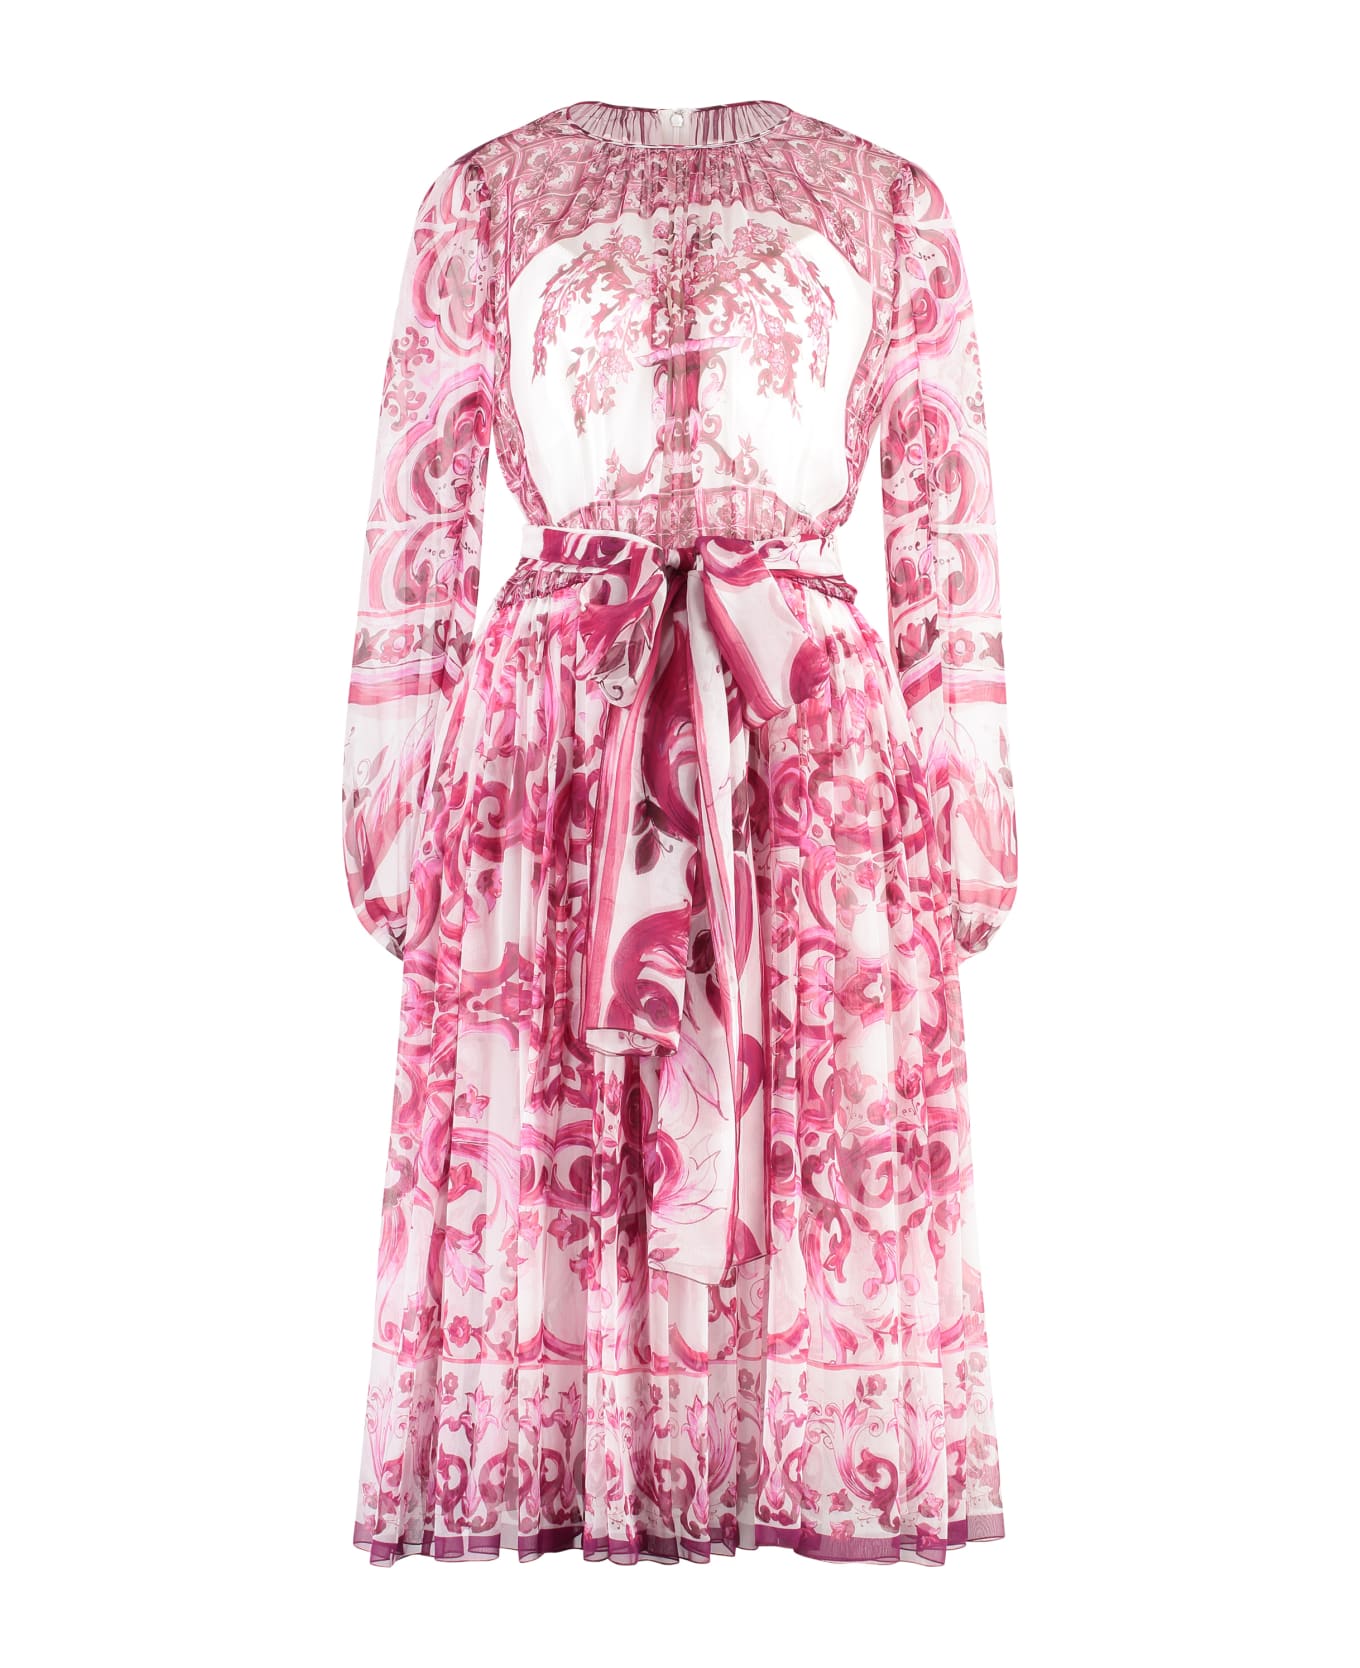 Dolce & Gabbana Chiffon Dress - Pink